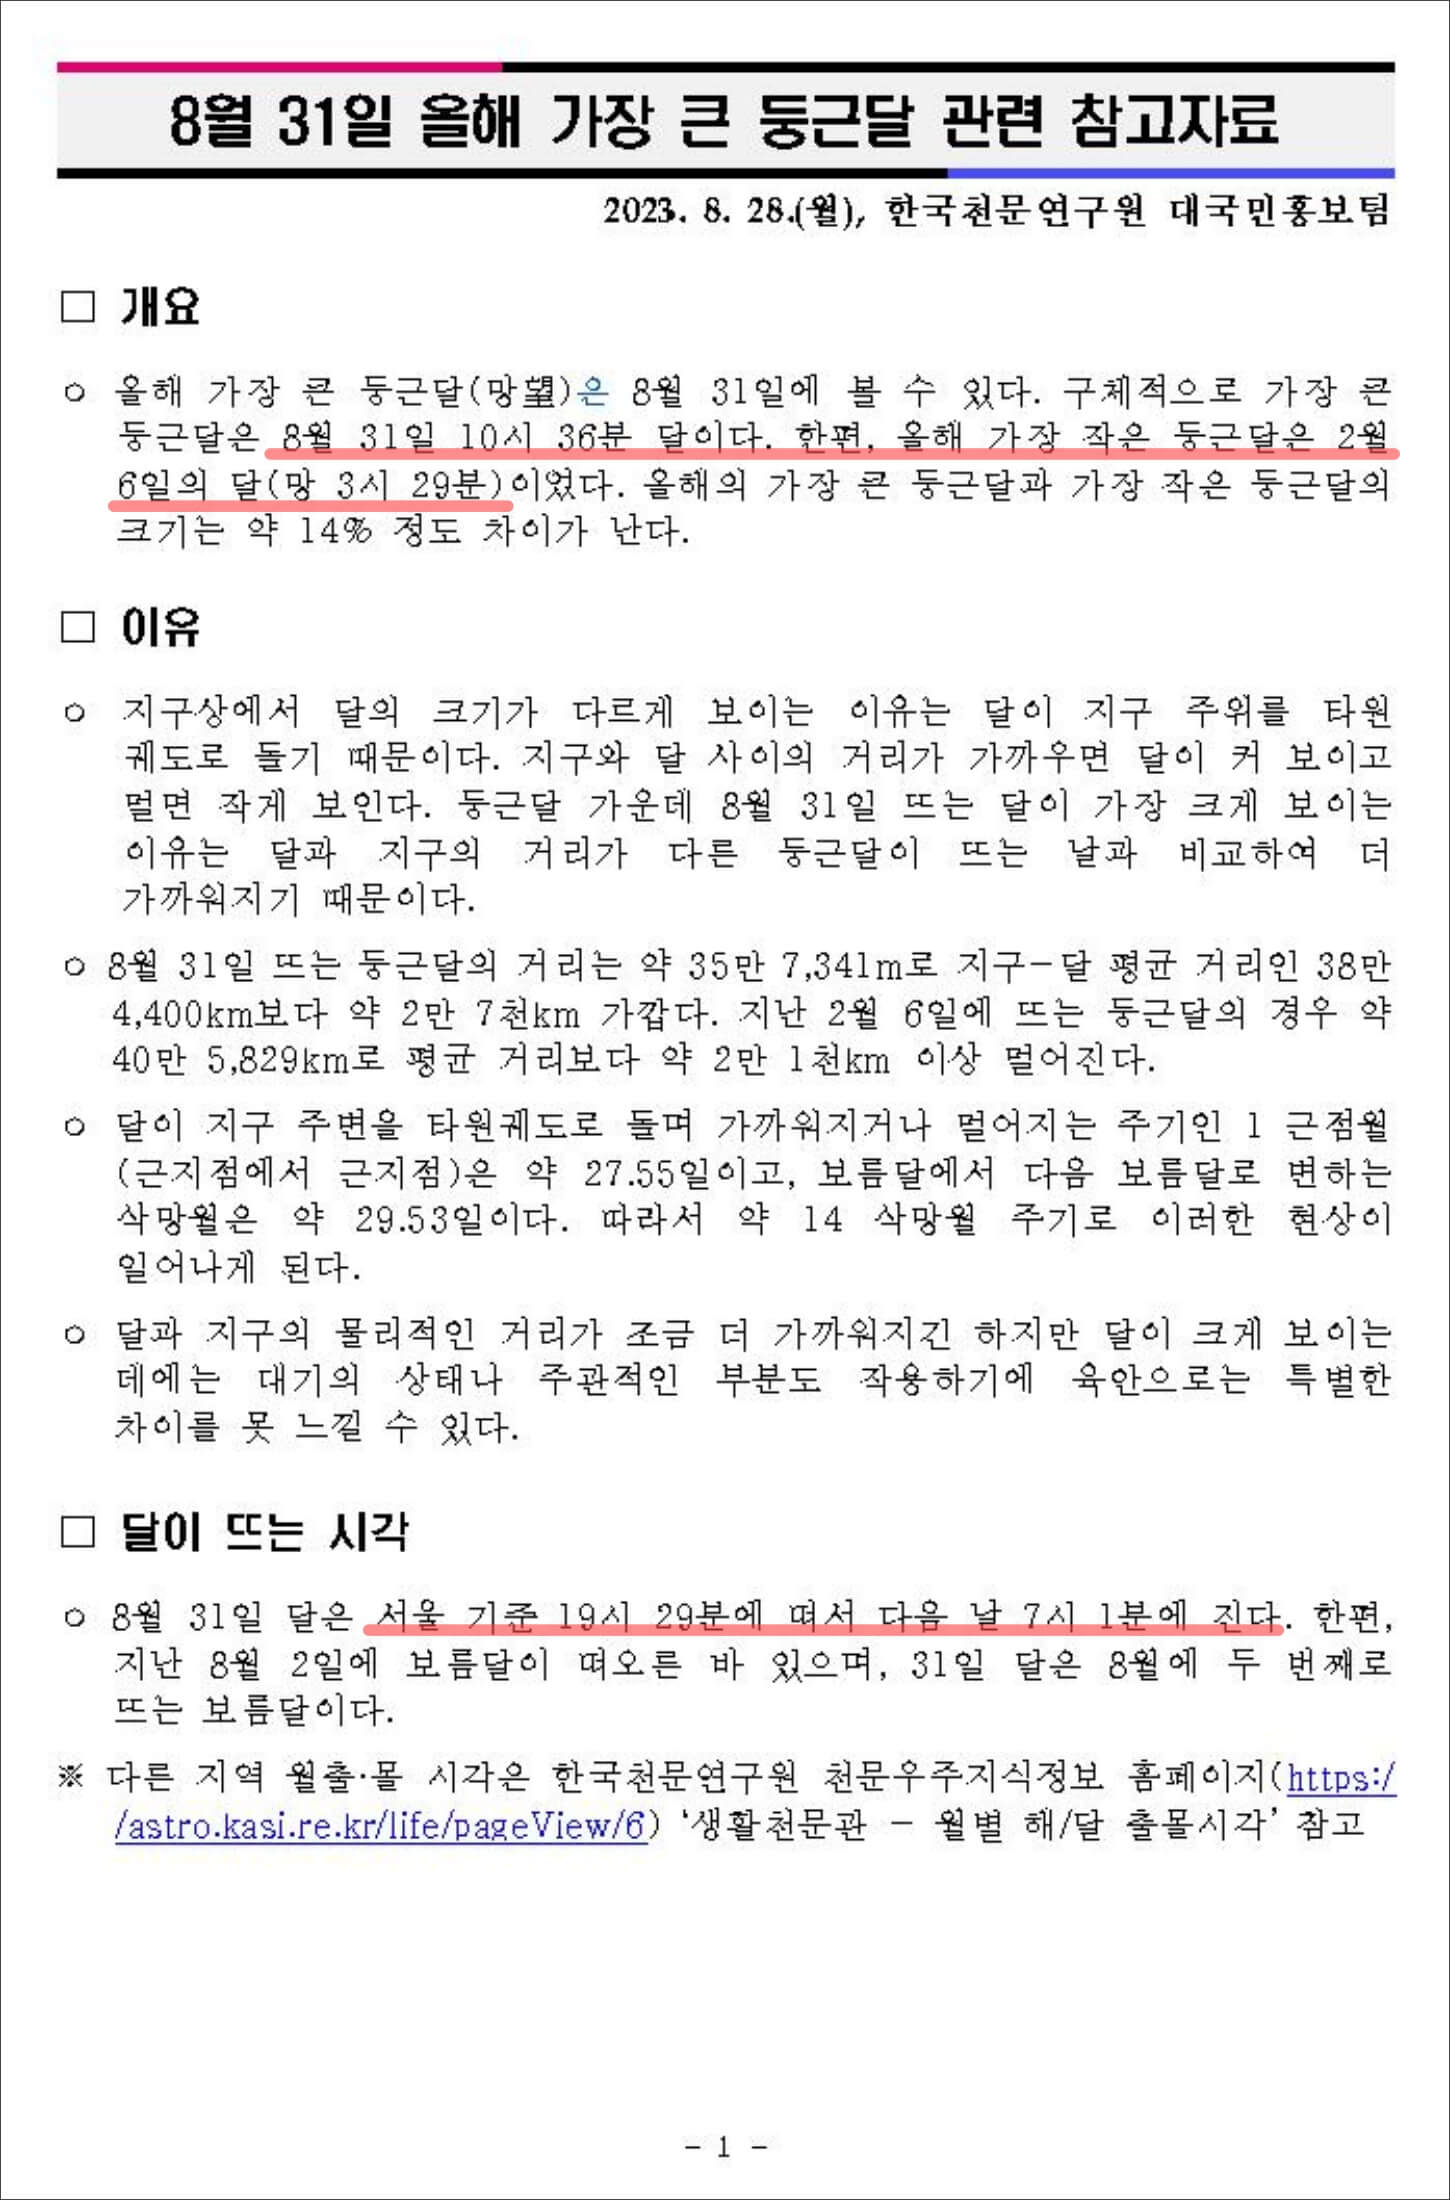 슈퍼 블루문&#44; 한국천문연구원 보도자료